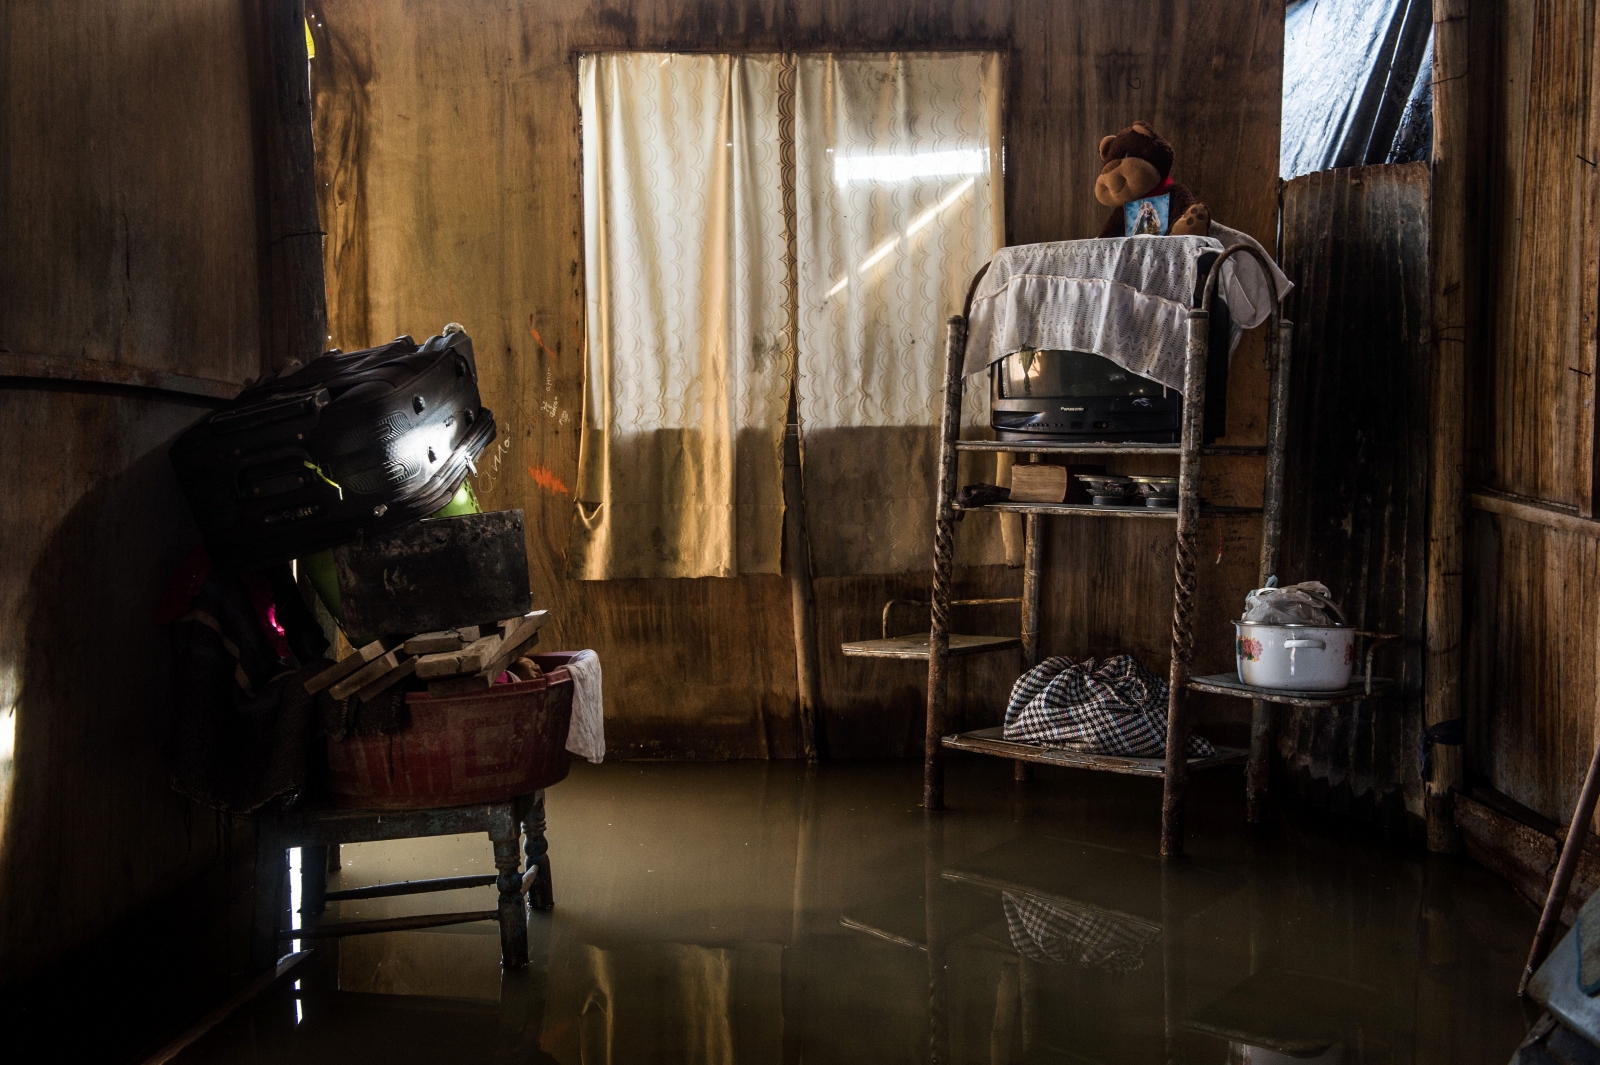 Peru landslides floods inundacin imagenes